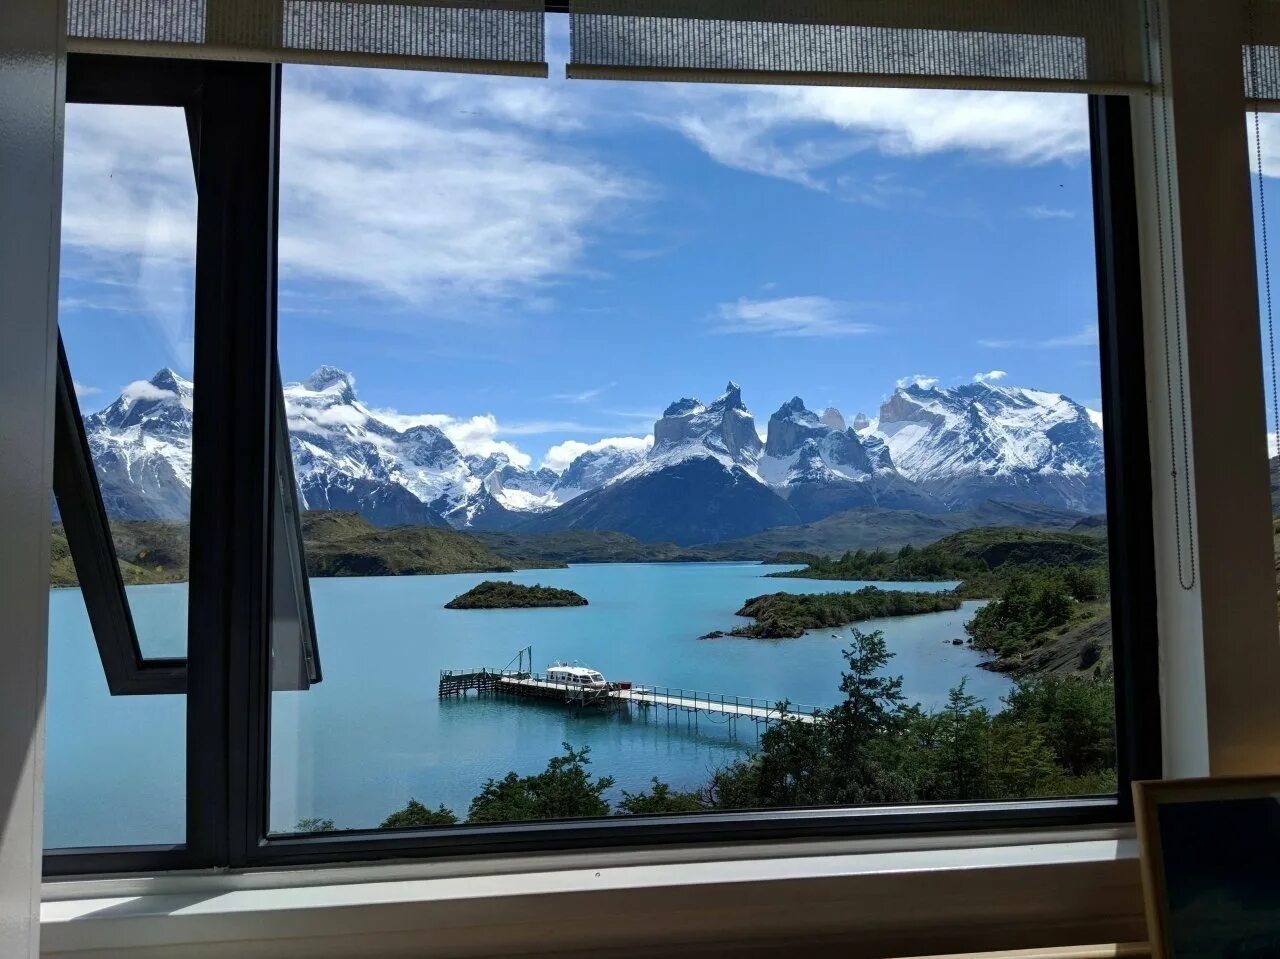 Окно на полный экран. Окно с видом на горы Швейцарии Лугано. Панорамный вид на горы. Вид на горы с балкона. Окно с красивым видом.